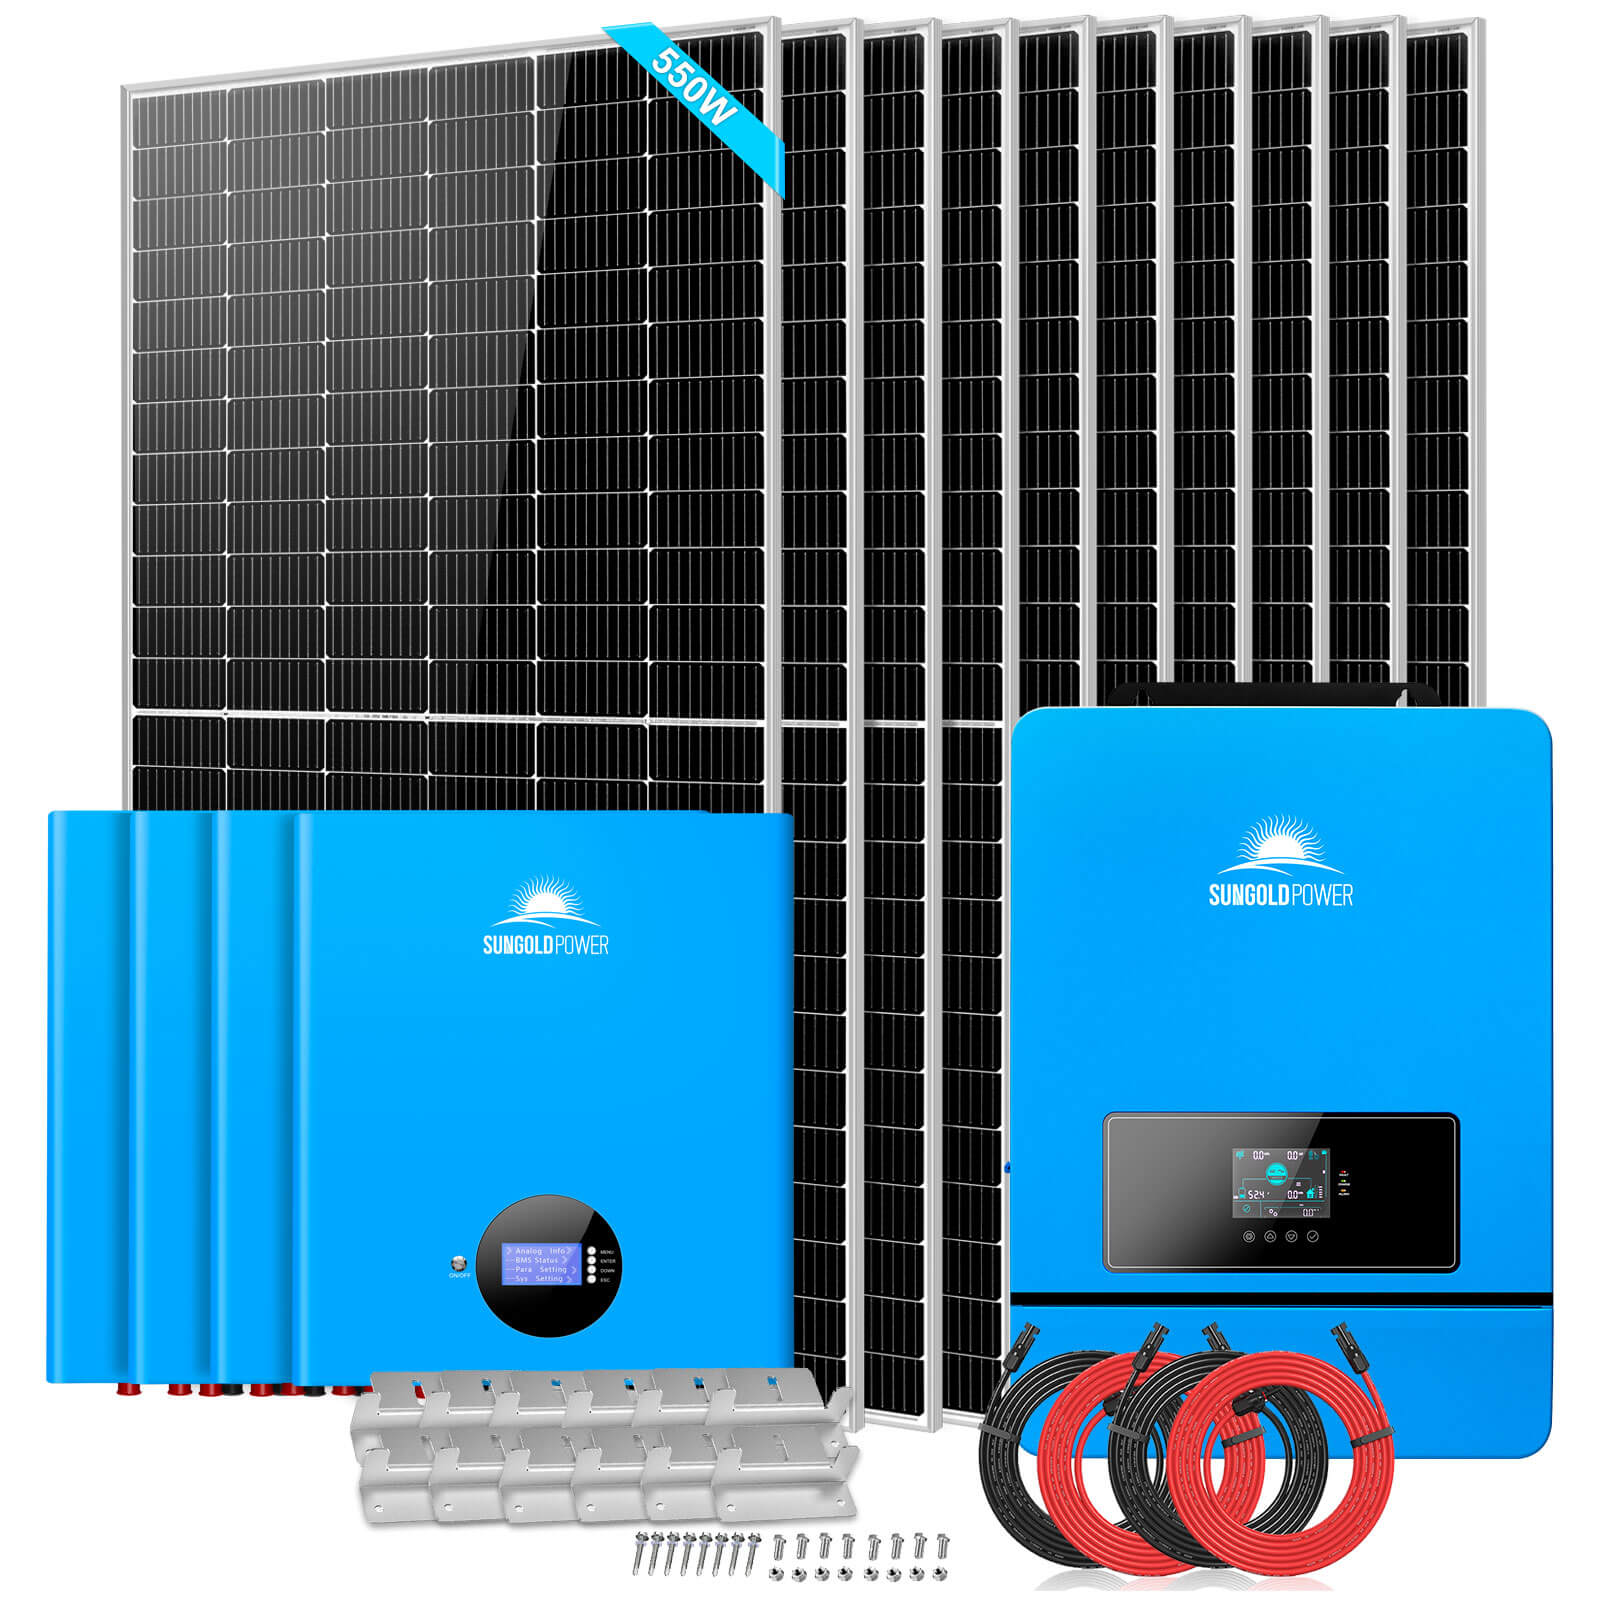 Sungold Power Off-Grid Solar Kit 10 X 550 WATTS SOLAR PANELS 4 X 5.12KWH POWERWALL LITHIUM BATTERY 10KW SOLAR INVERTER 48VDC 120V/240V